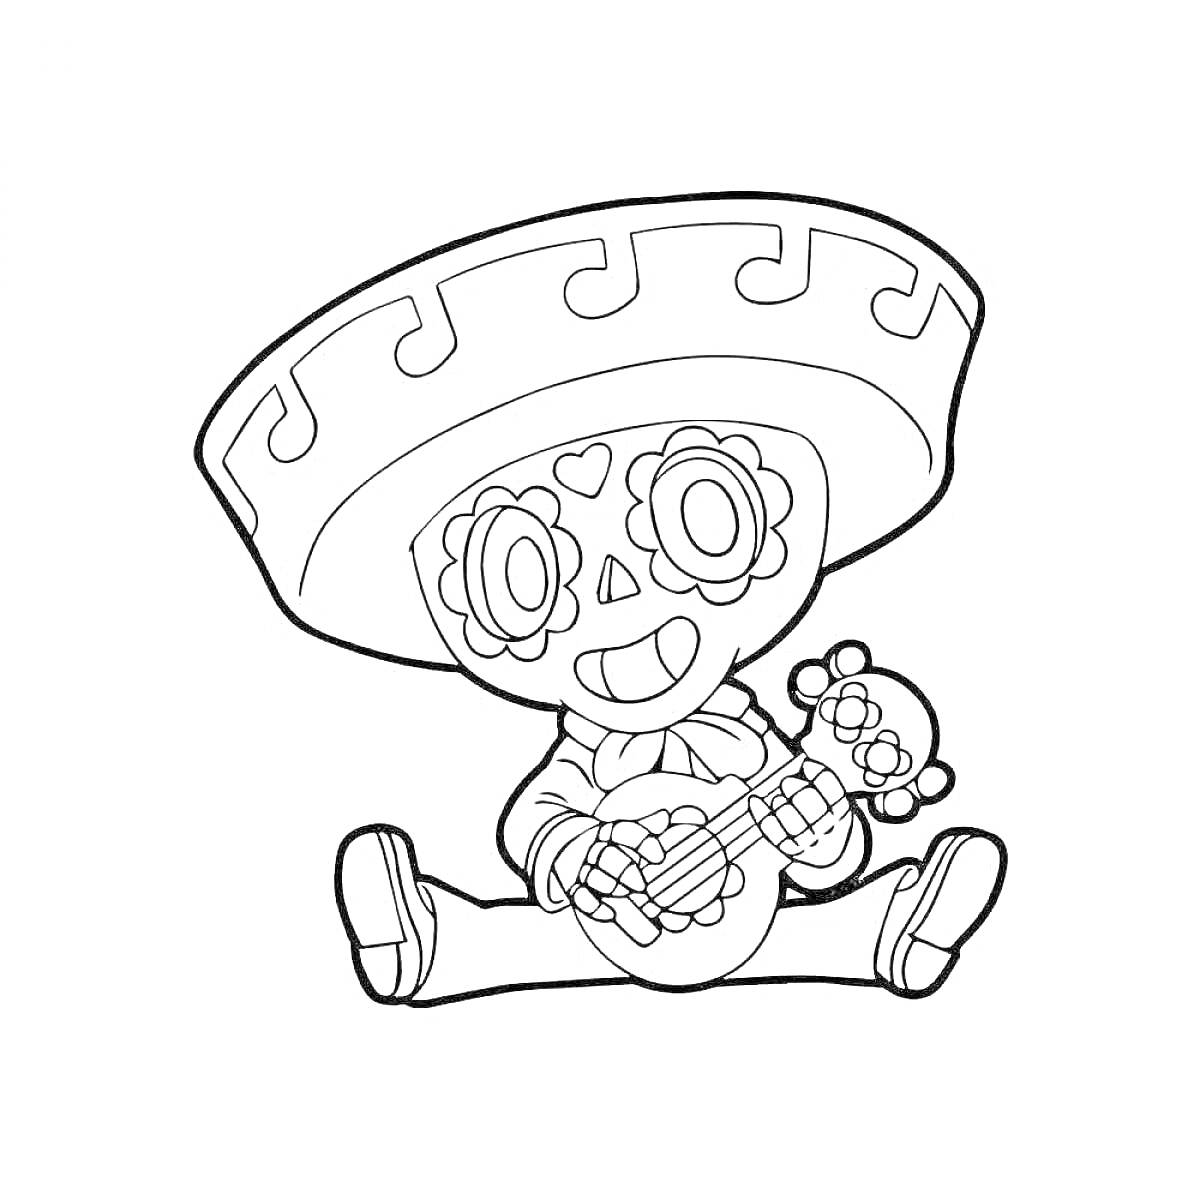 Раскраска Эль Примо в шляпе со скелетной маской, сидящий с бубном